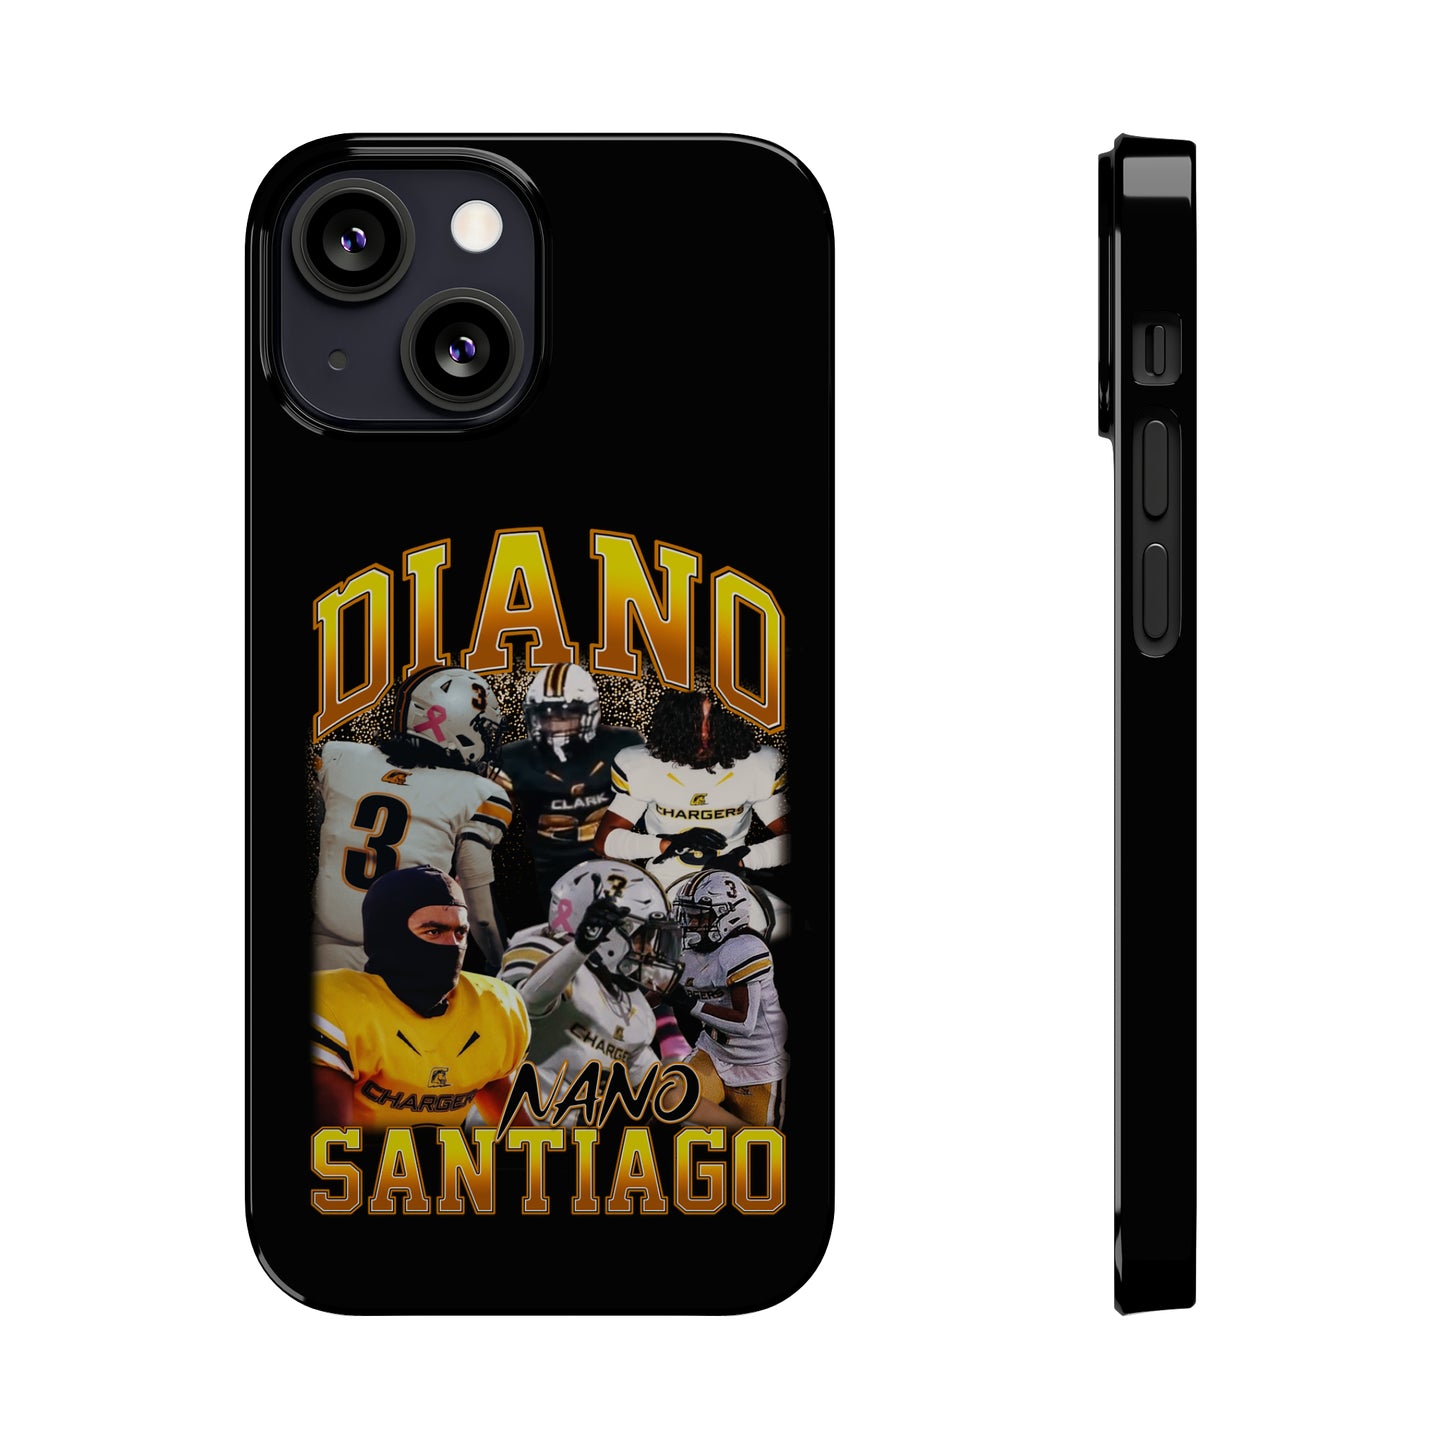 Diano Santiago Phone Case